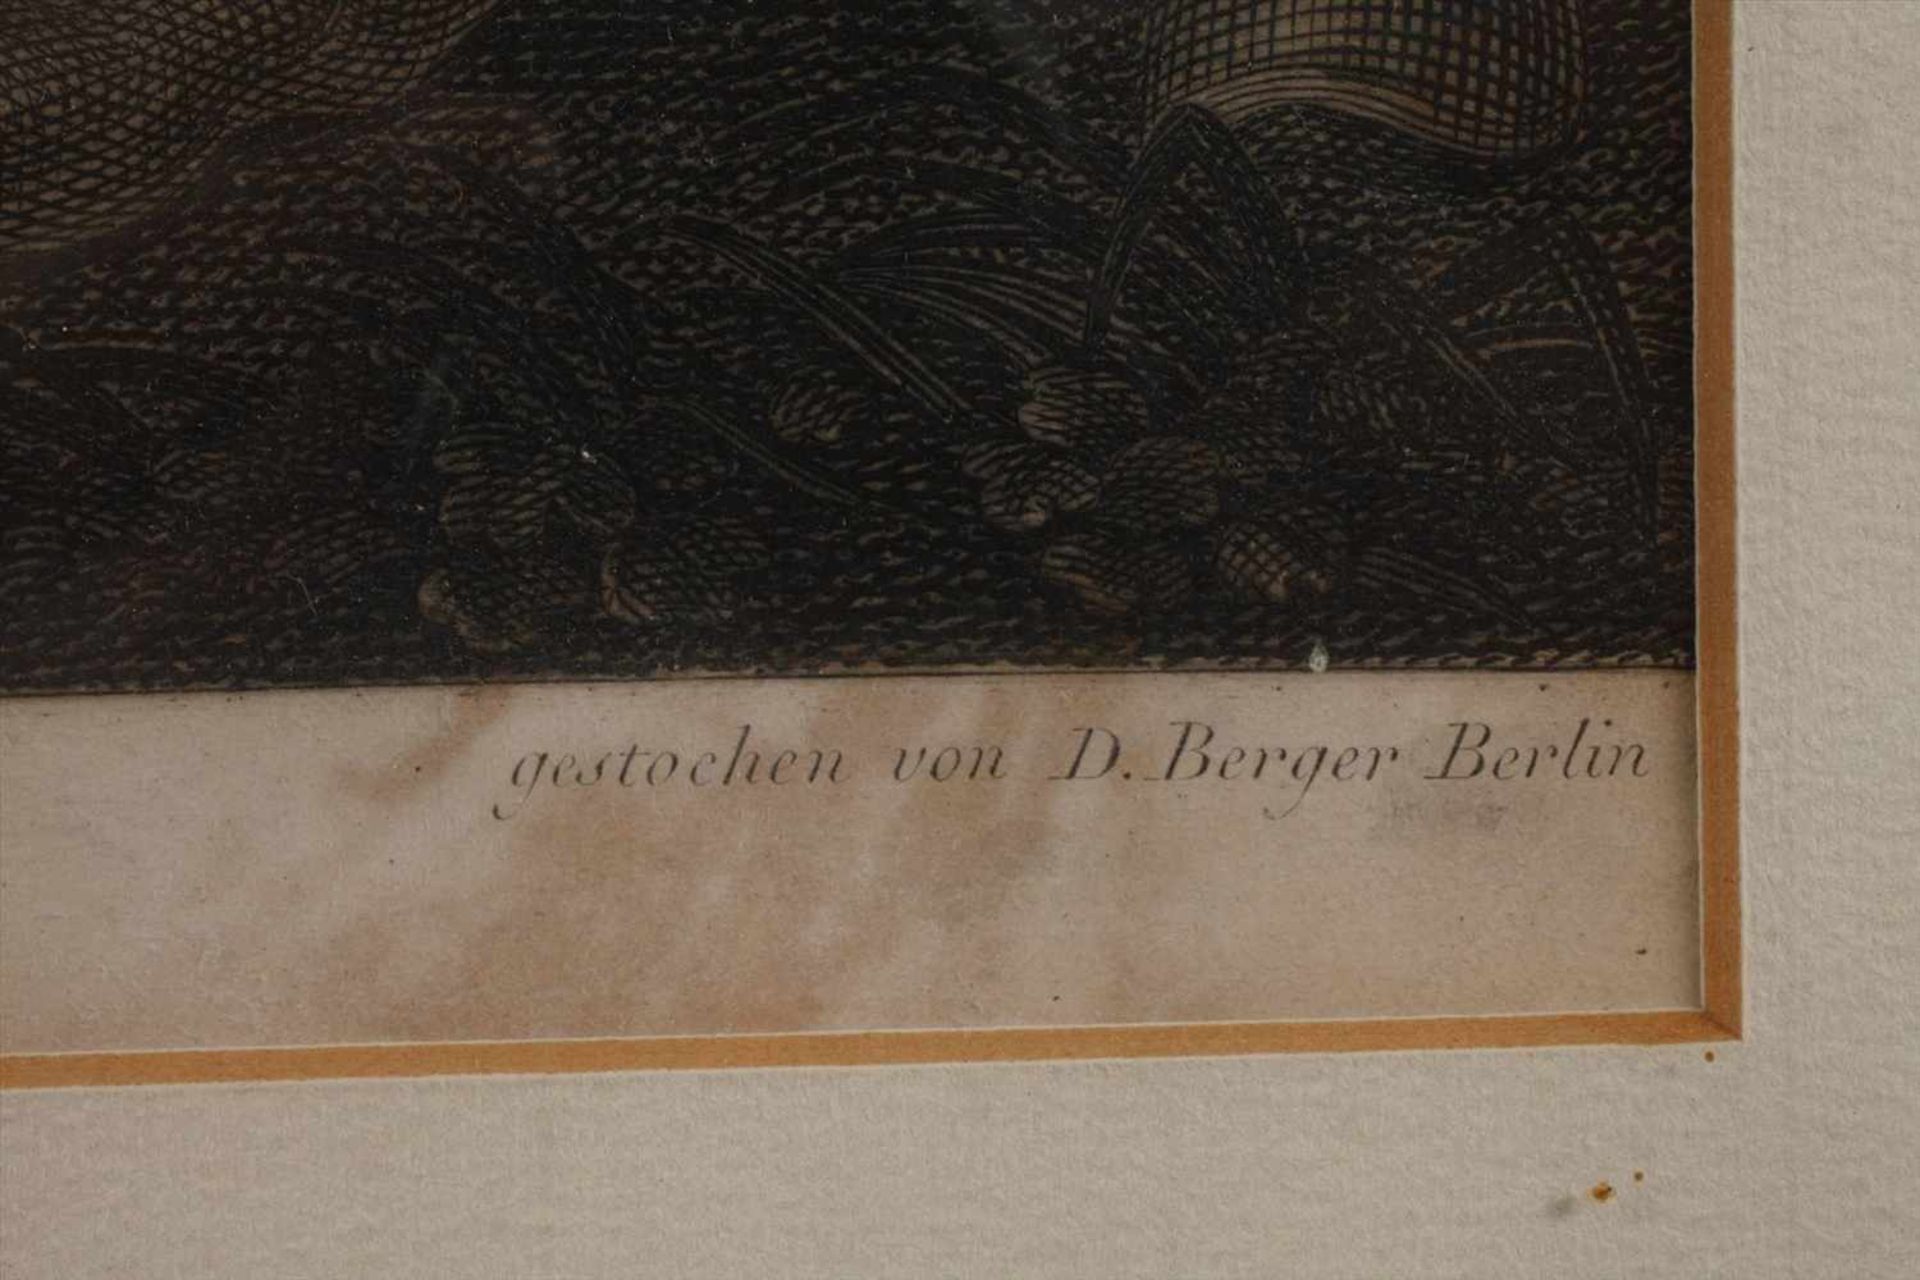 Daniel Berger "Friedrich II bei Kunersdorf"der Preußenkönig zu Pferde im Schlachtengetümmel, - Bild 2 aus 4